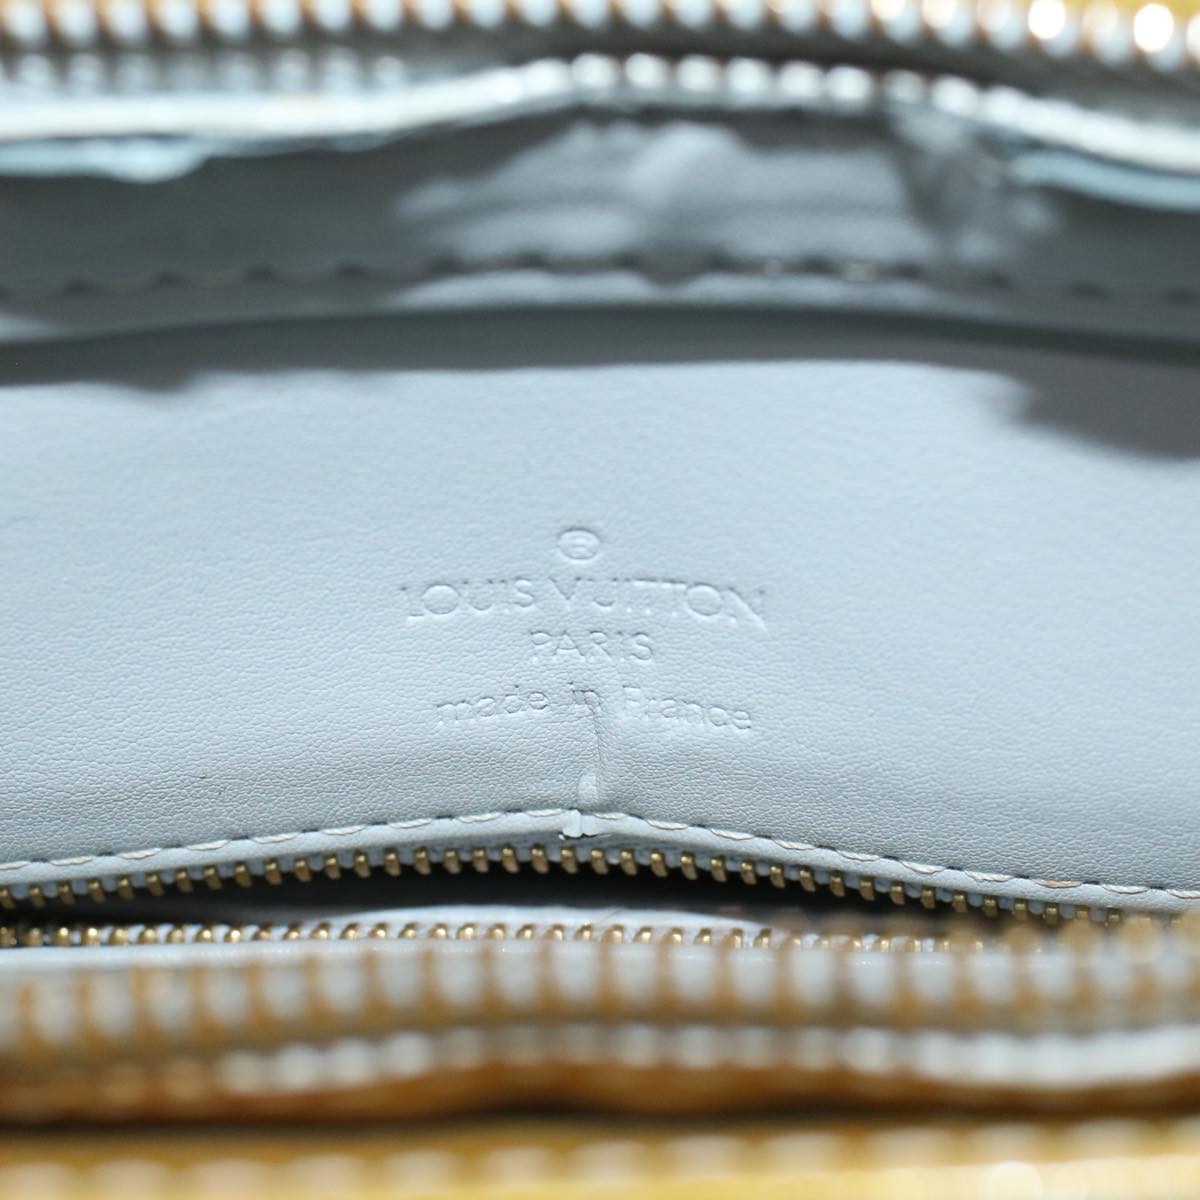 Auth Louis Vuitton Monogram Vernis Houston M91053 Women's Tote Bag Gris